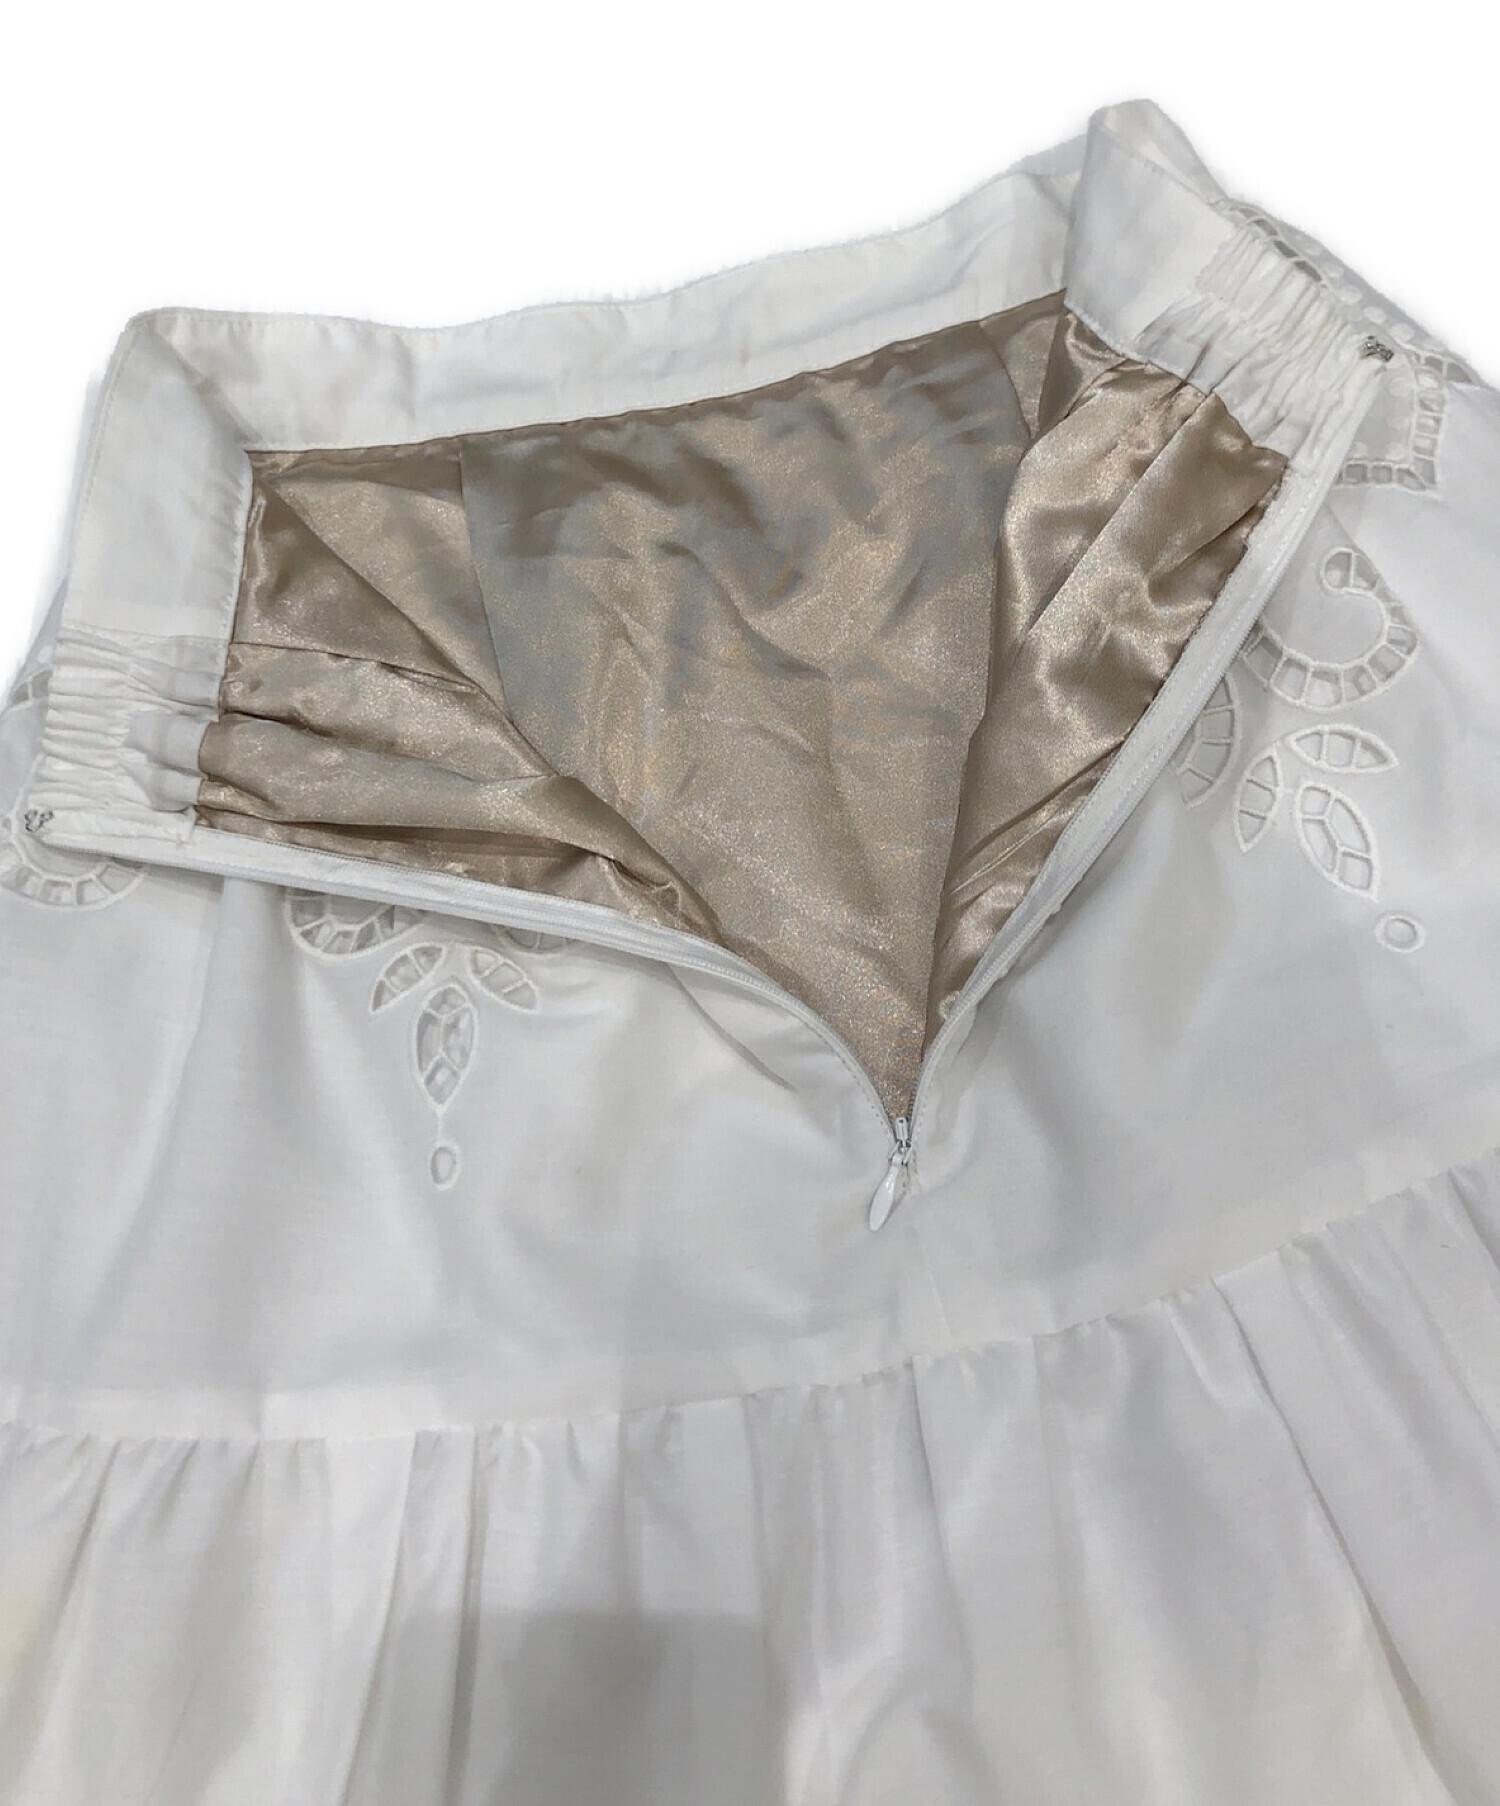 riandture (リランドチュール) カットワーク刺繍スカート ホワイト